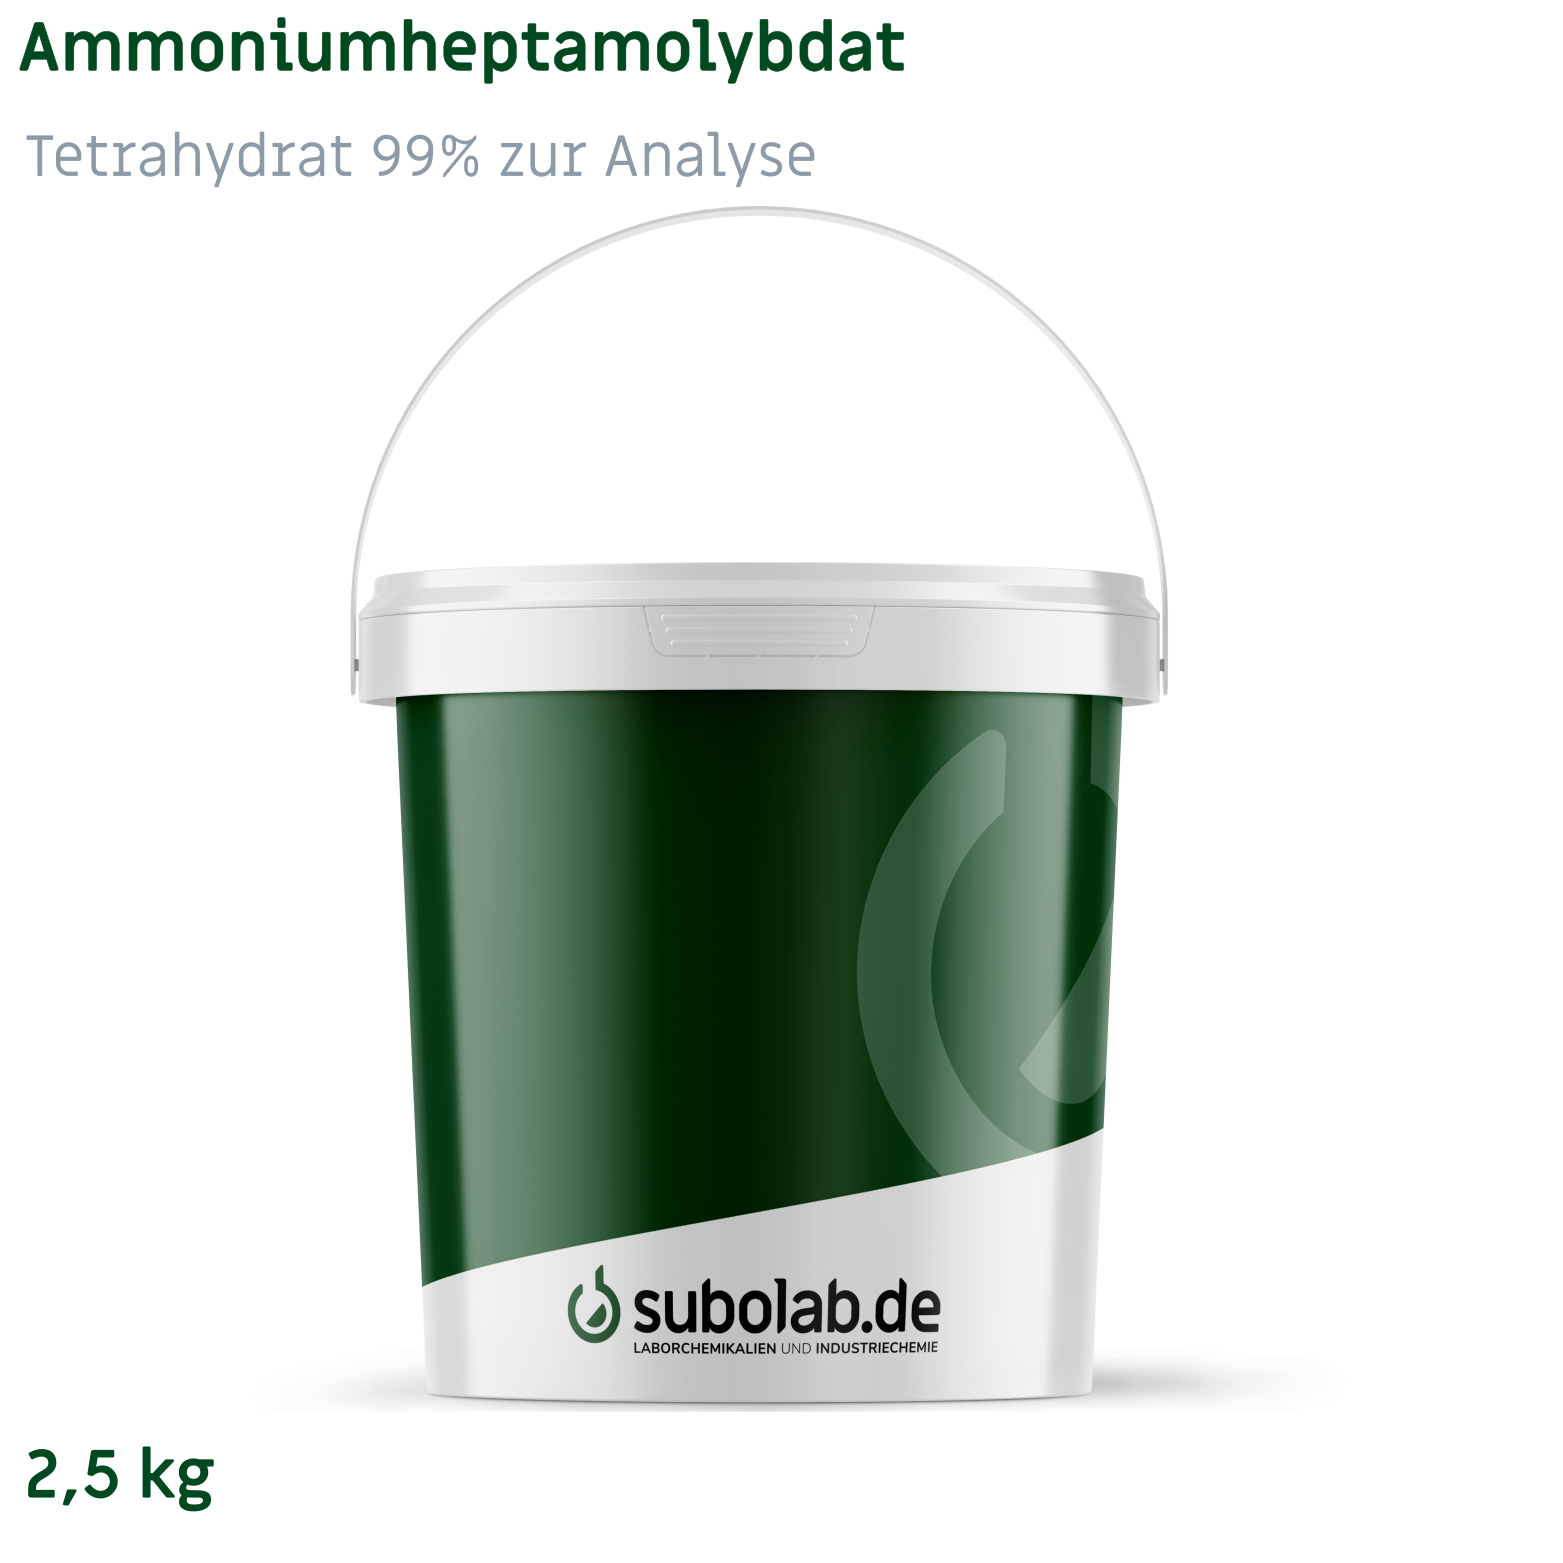 Bild von Ammoniumheptamolybdat - Tetrahydrat 99% zur Analyse (2,5 kg)